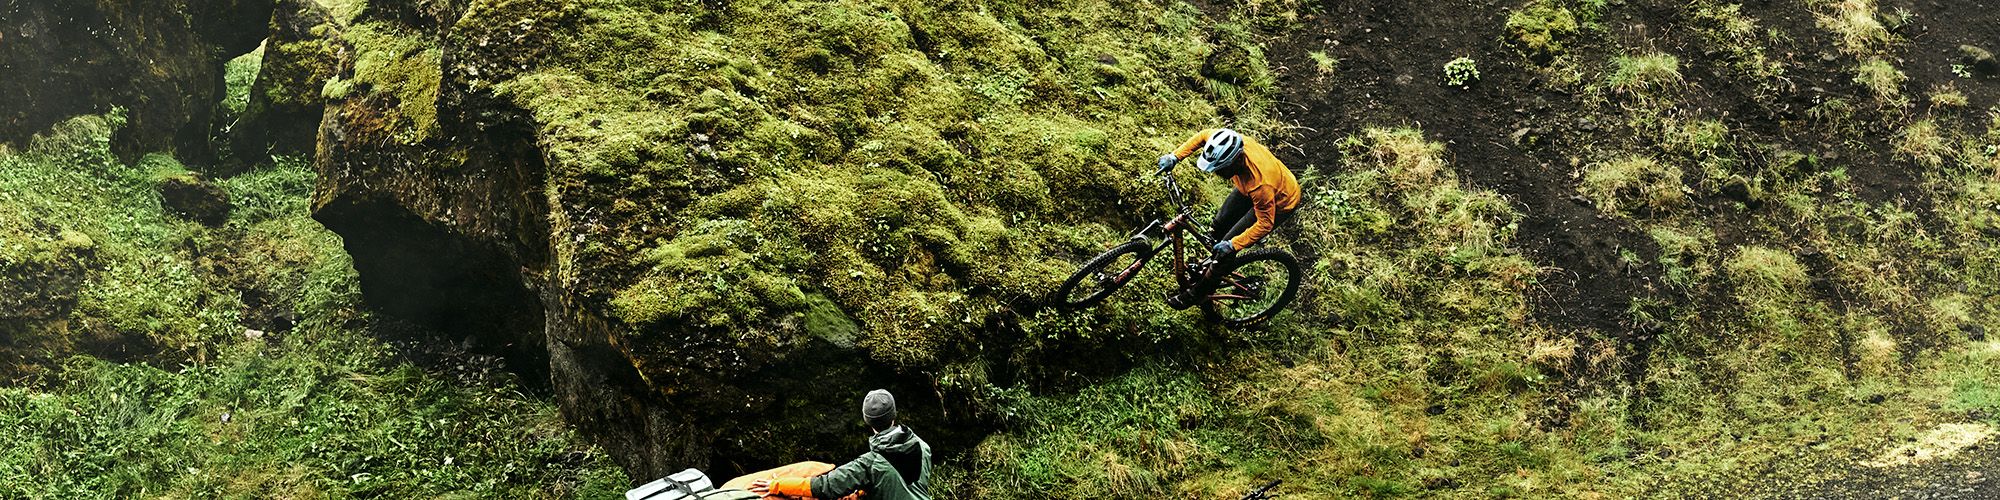 Eliot Jackson riding on a mountain bike through a field.